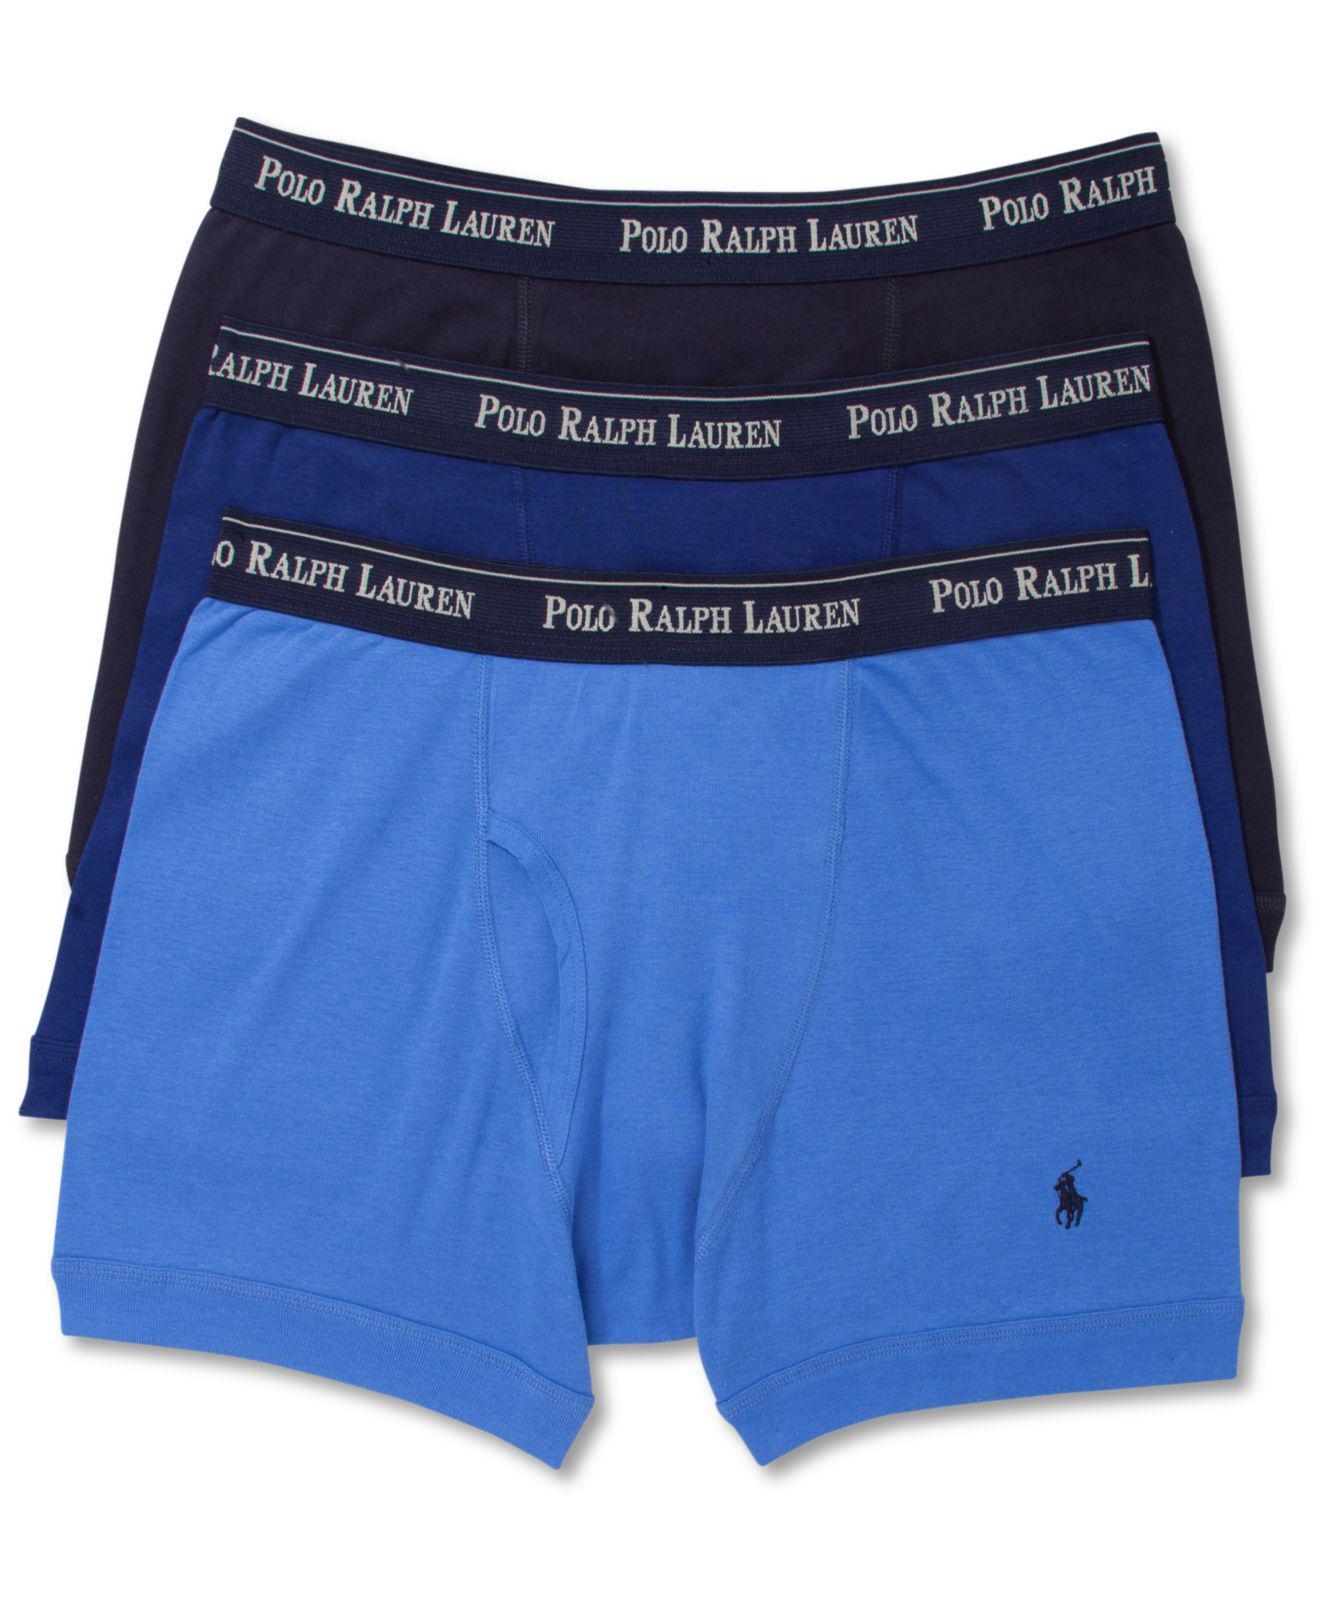 Lyst - Polo ralph lauren Underwear, Boxer Briefs 3 Pack in Blue for Men